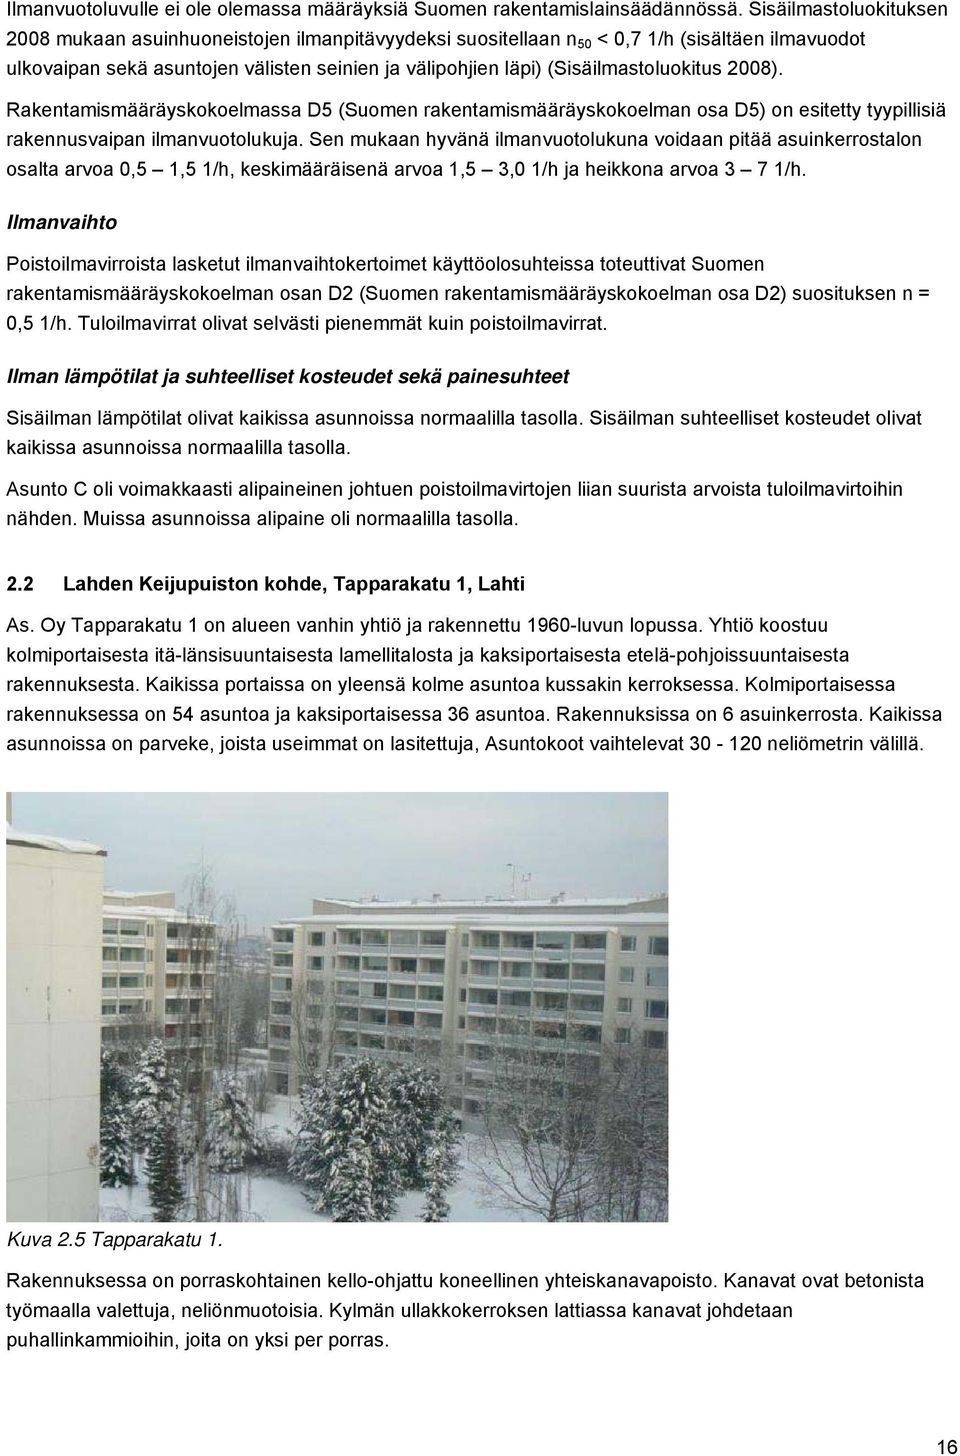 (Sisäilmastoluokitus 2008). Rakentamismääräyskokoelmassa D5 (Suomen rakentamismääräyskokoelman osa D5) on esitetty tyypillisiä rakennusvaipan ilmanvuotolukuja.